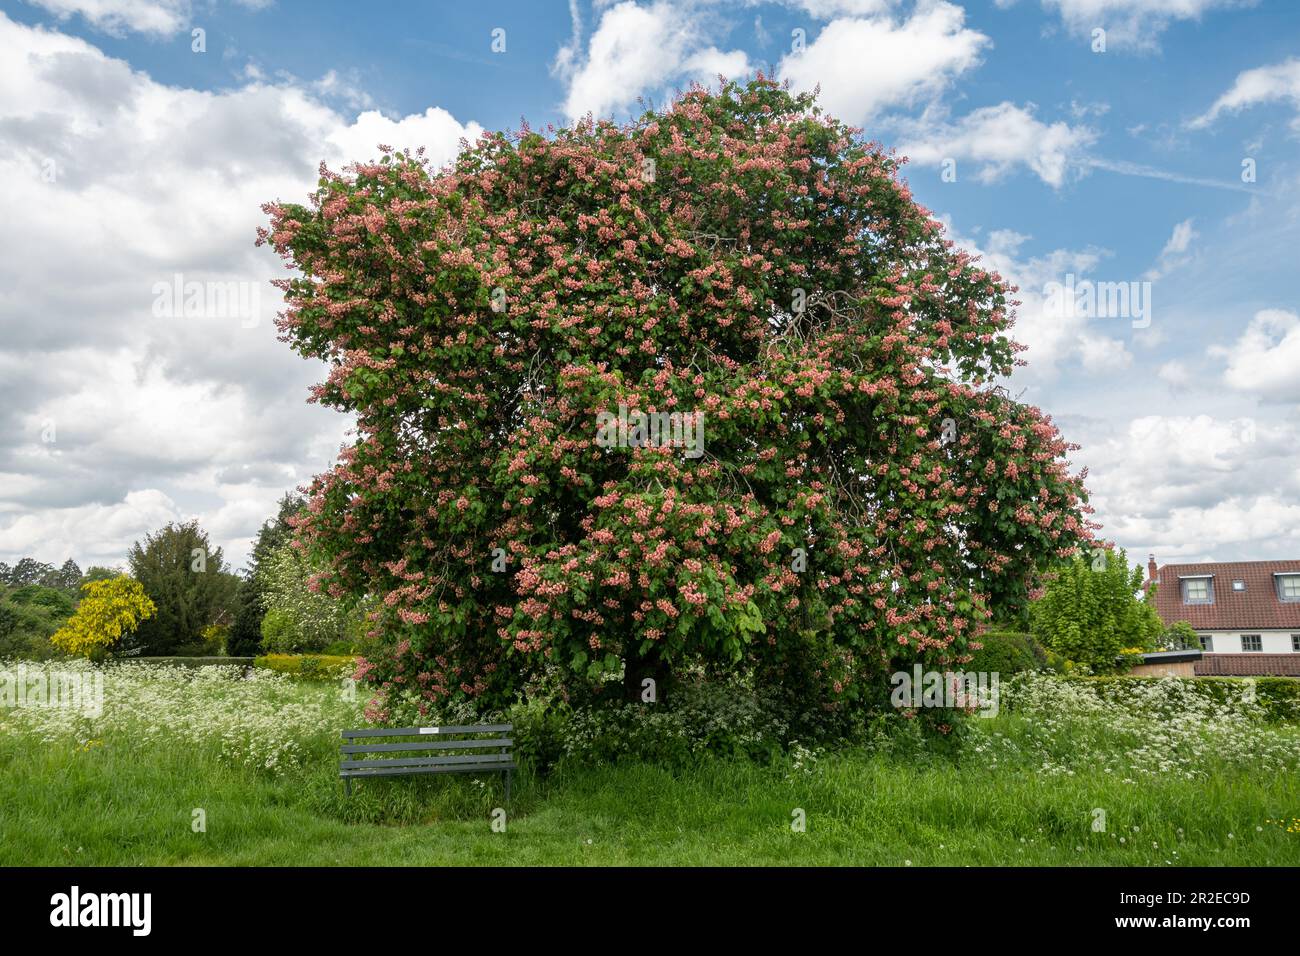 Red Horse Rosskastanie (Aesculus Dryas, Aesculus X Dryas, einem fruchtbaren hybriden Arten) mit rot oder rosa Blüten im Mai, Frühling blühende, Großbritannien Stockfoto